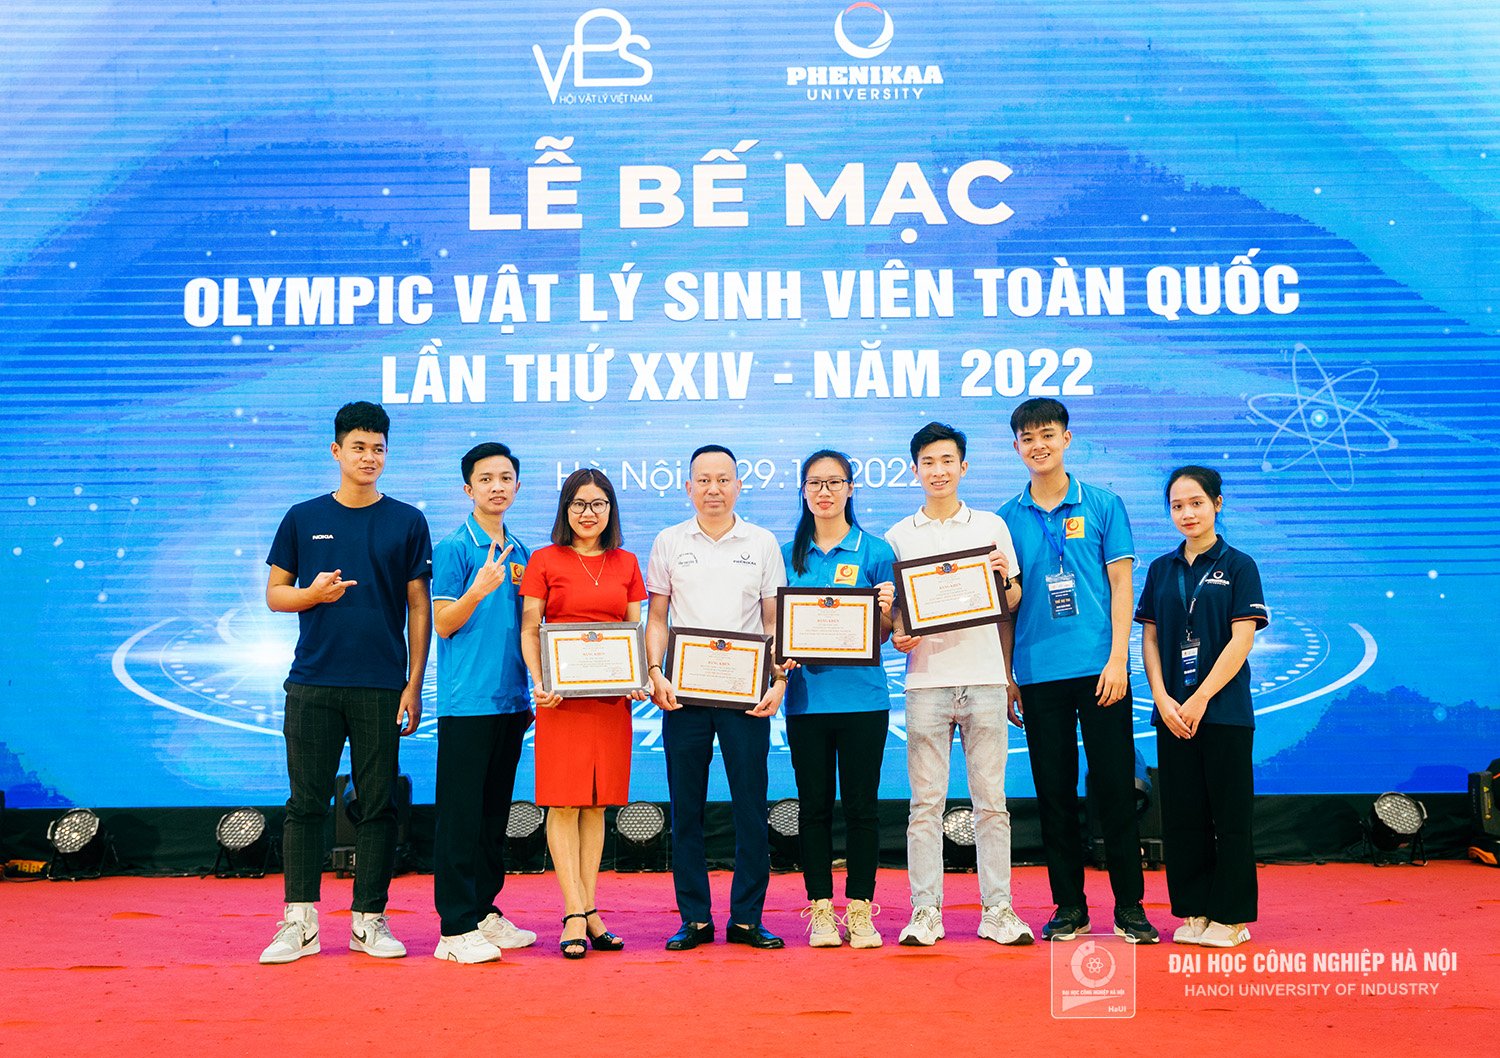 Trường Đại học Công nghiệp Hà Nội giành giải Nhì toàn đoàn Cuộc thi Olympic Vật lý sinh viên toàn quốc năm 2022